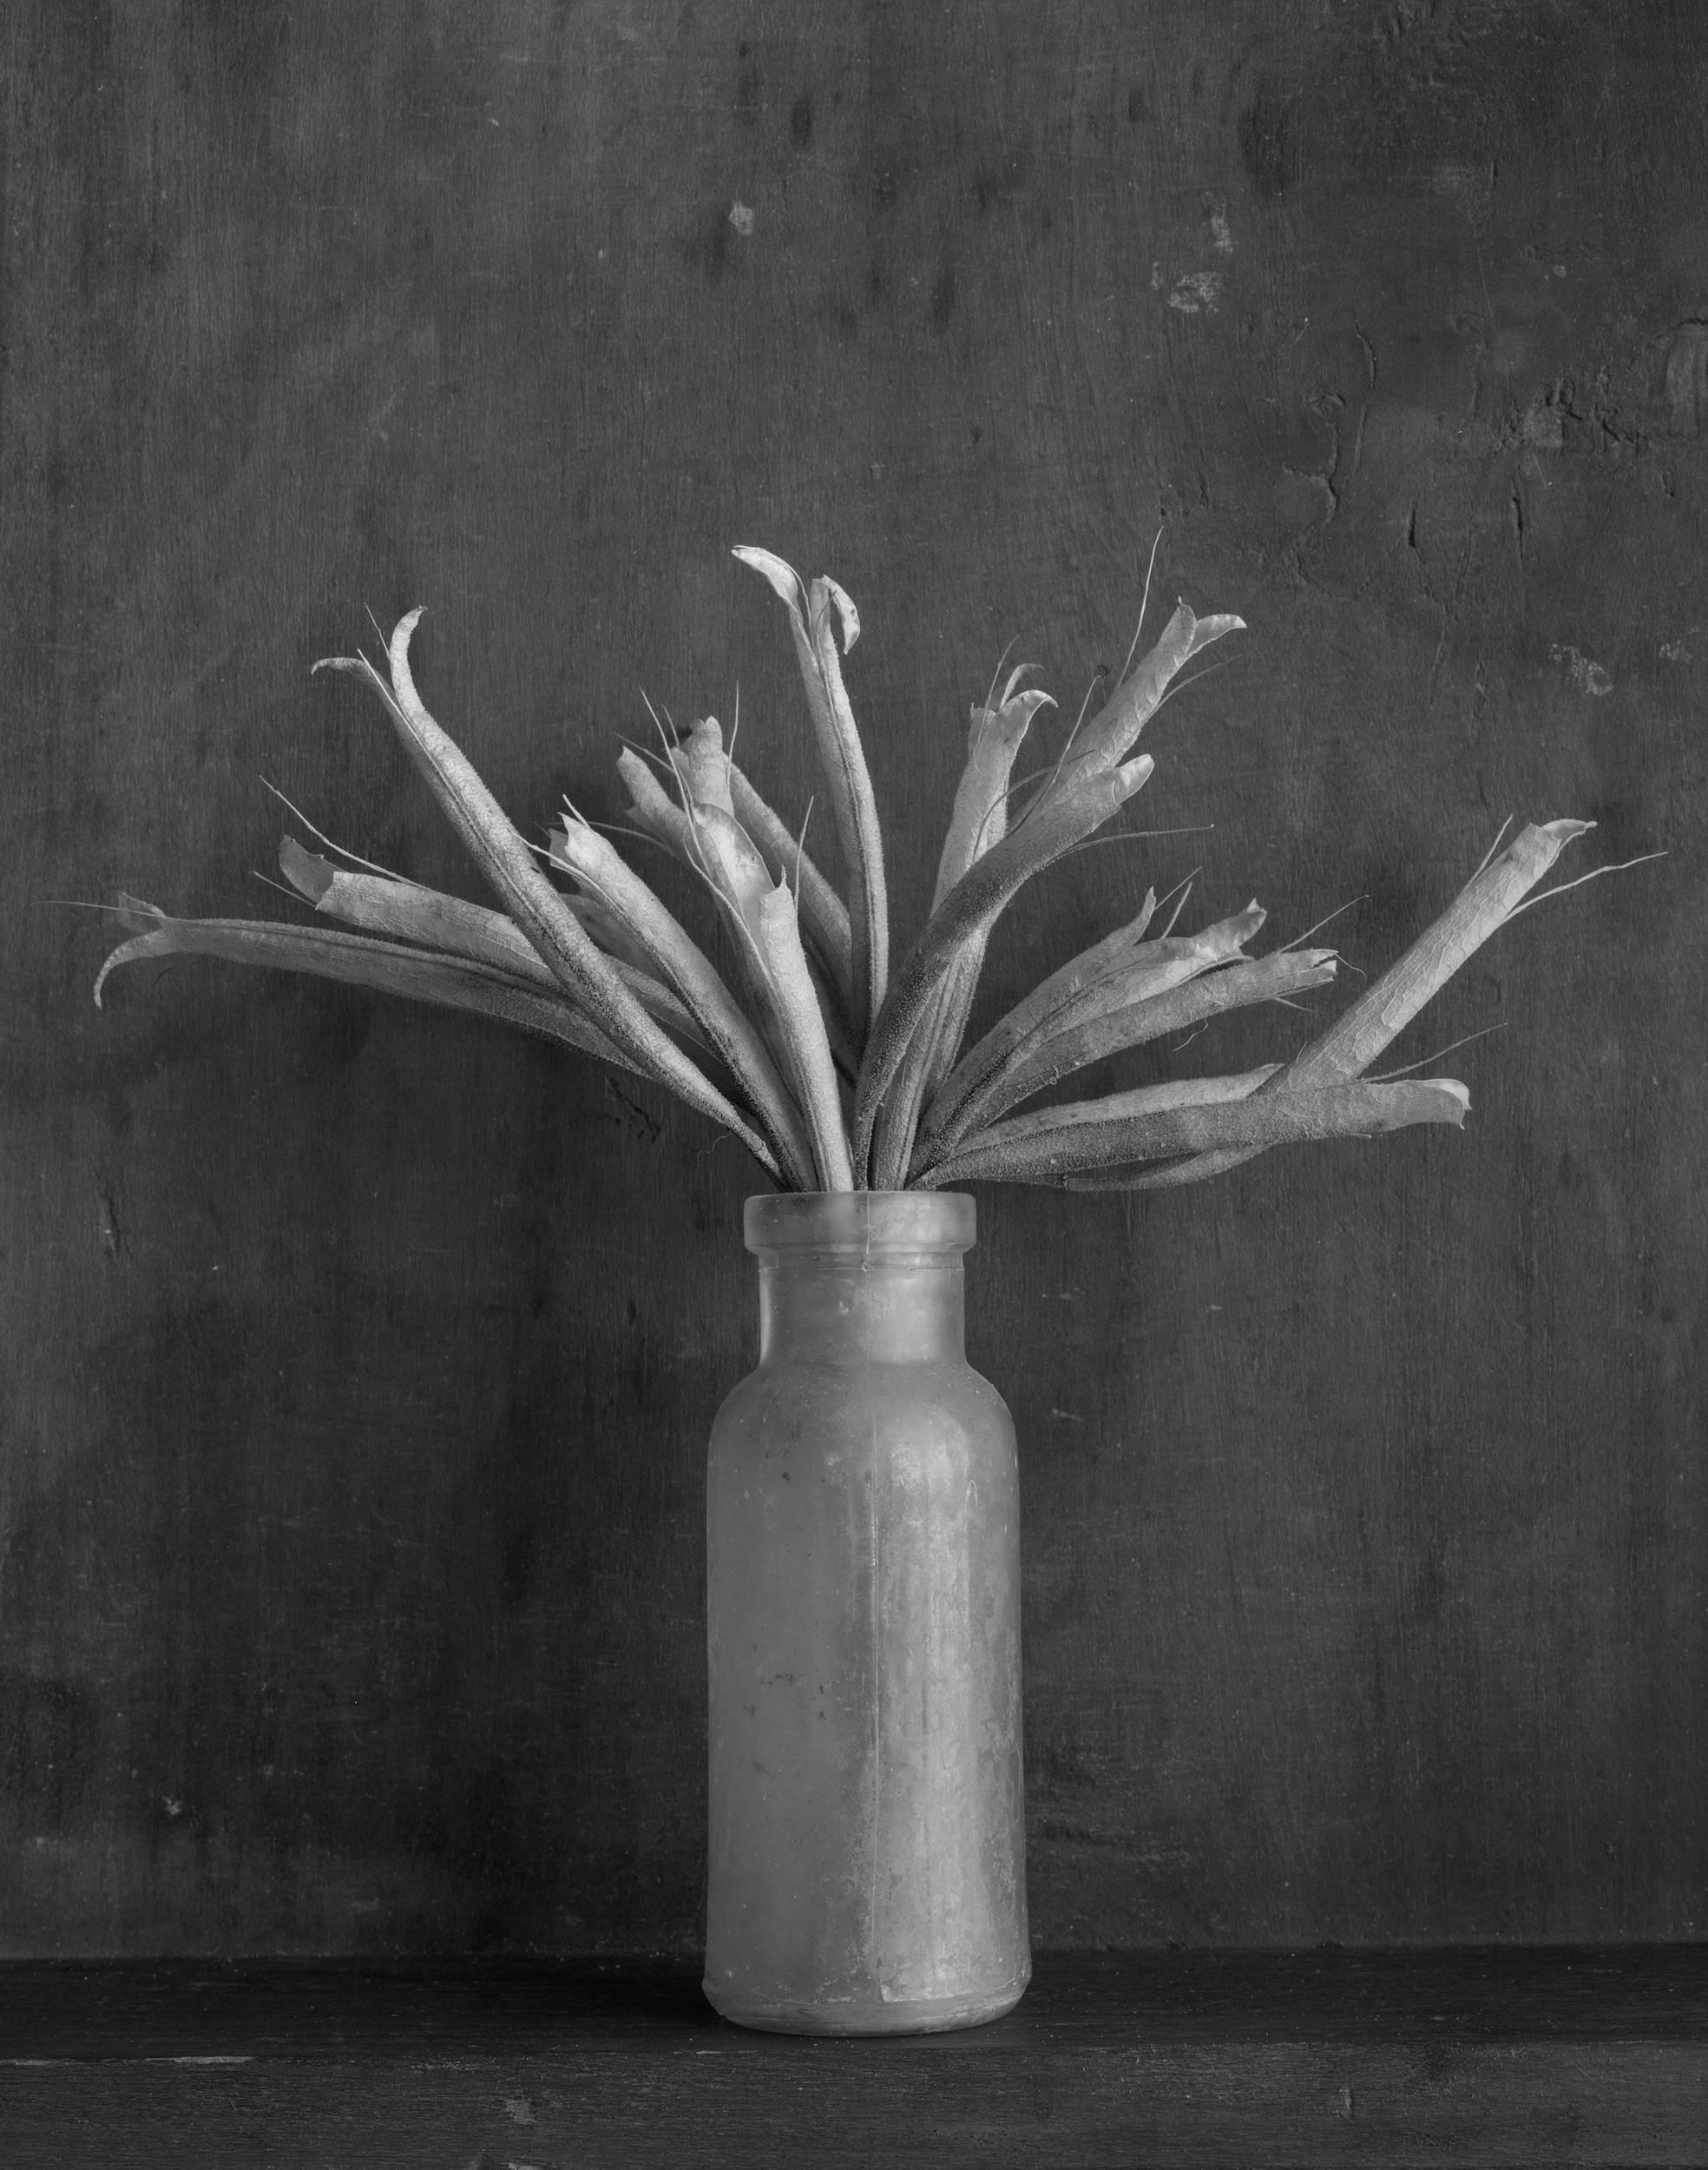  Bottle With Sharon's Seeds, noir et blanc, photographie de nature morte, signée, ltd